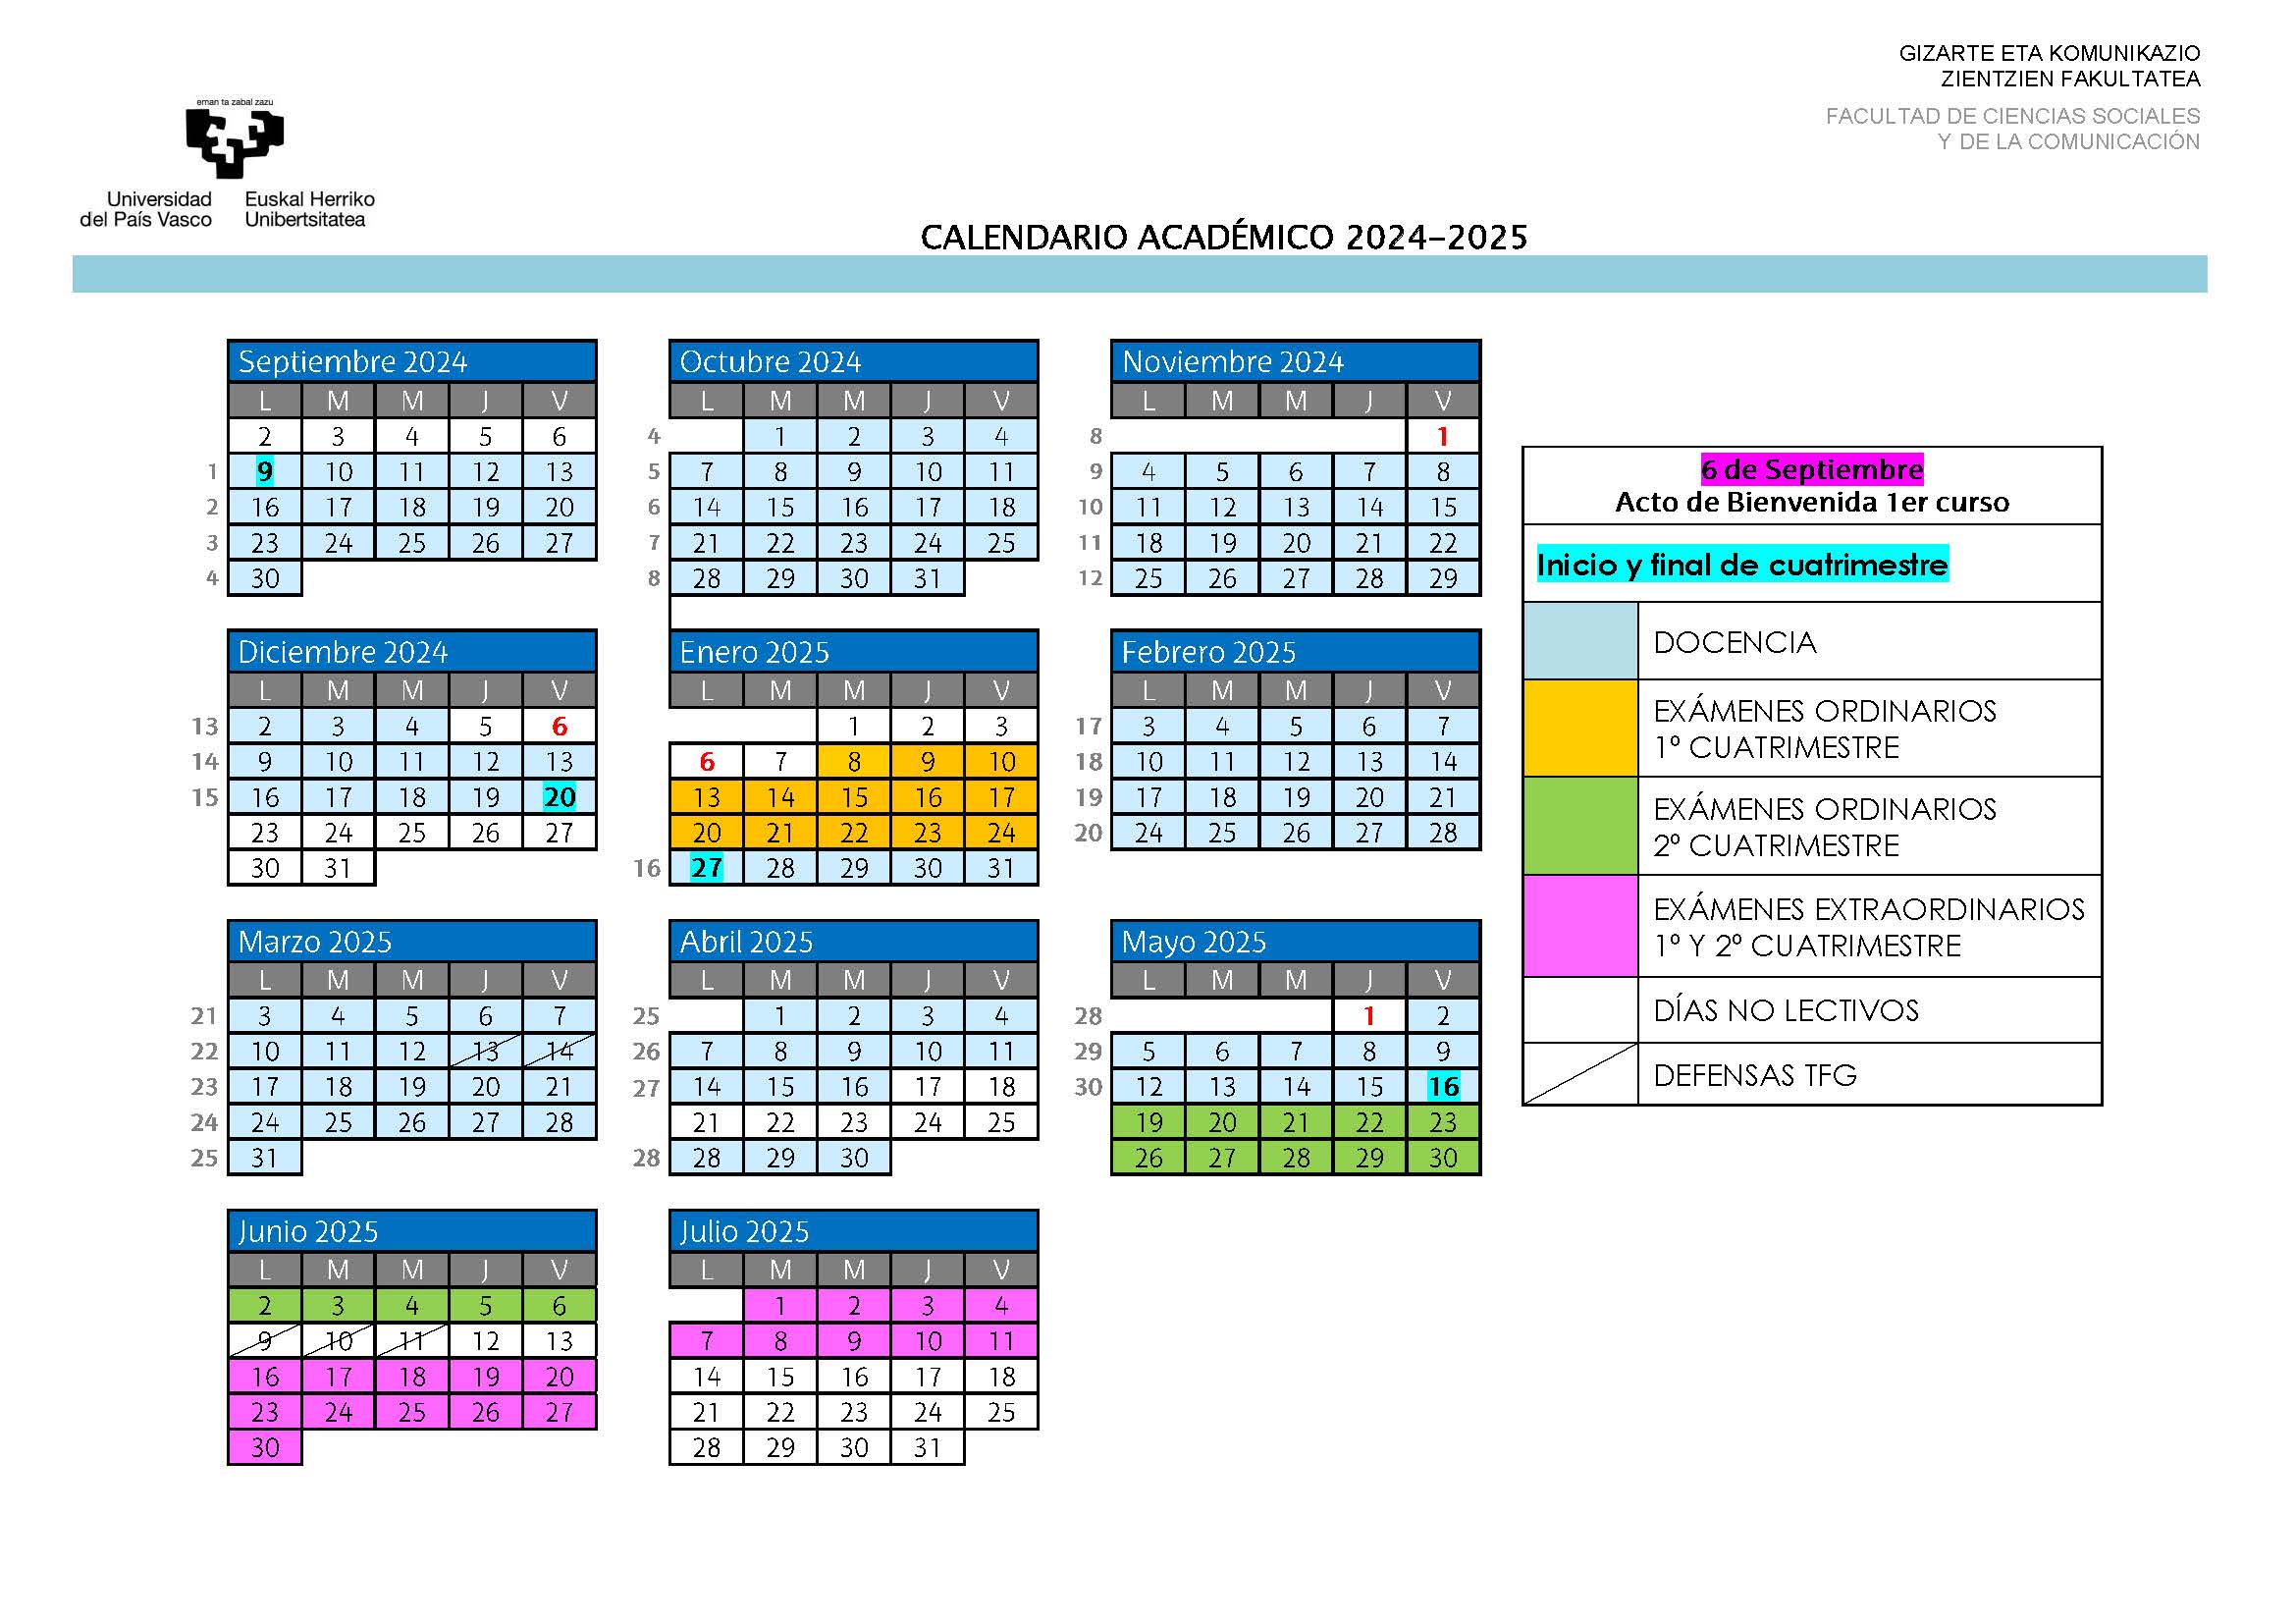 Calendario Académico 2024/2025